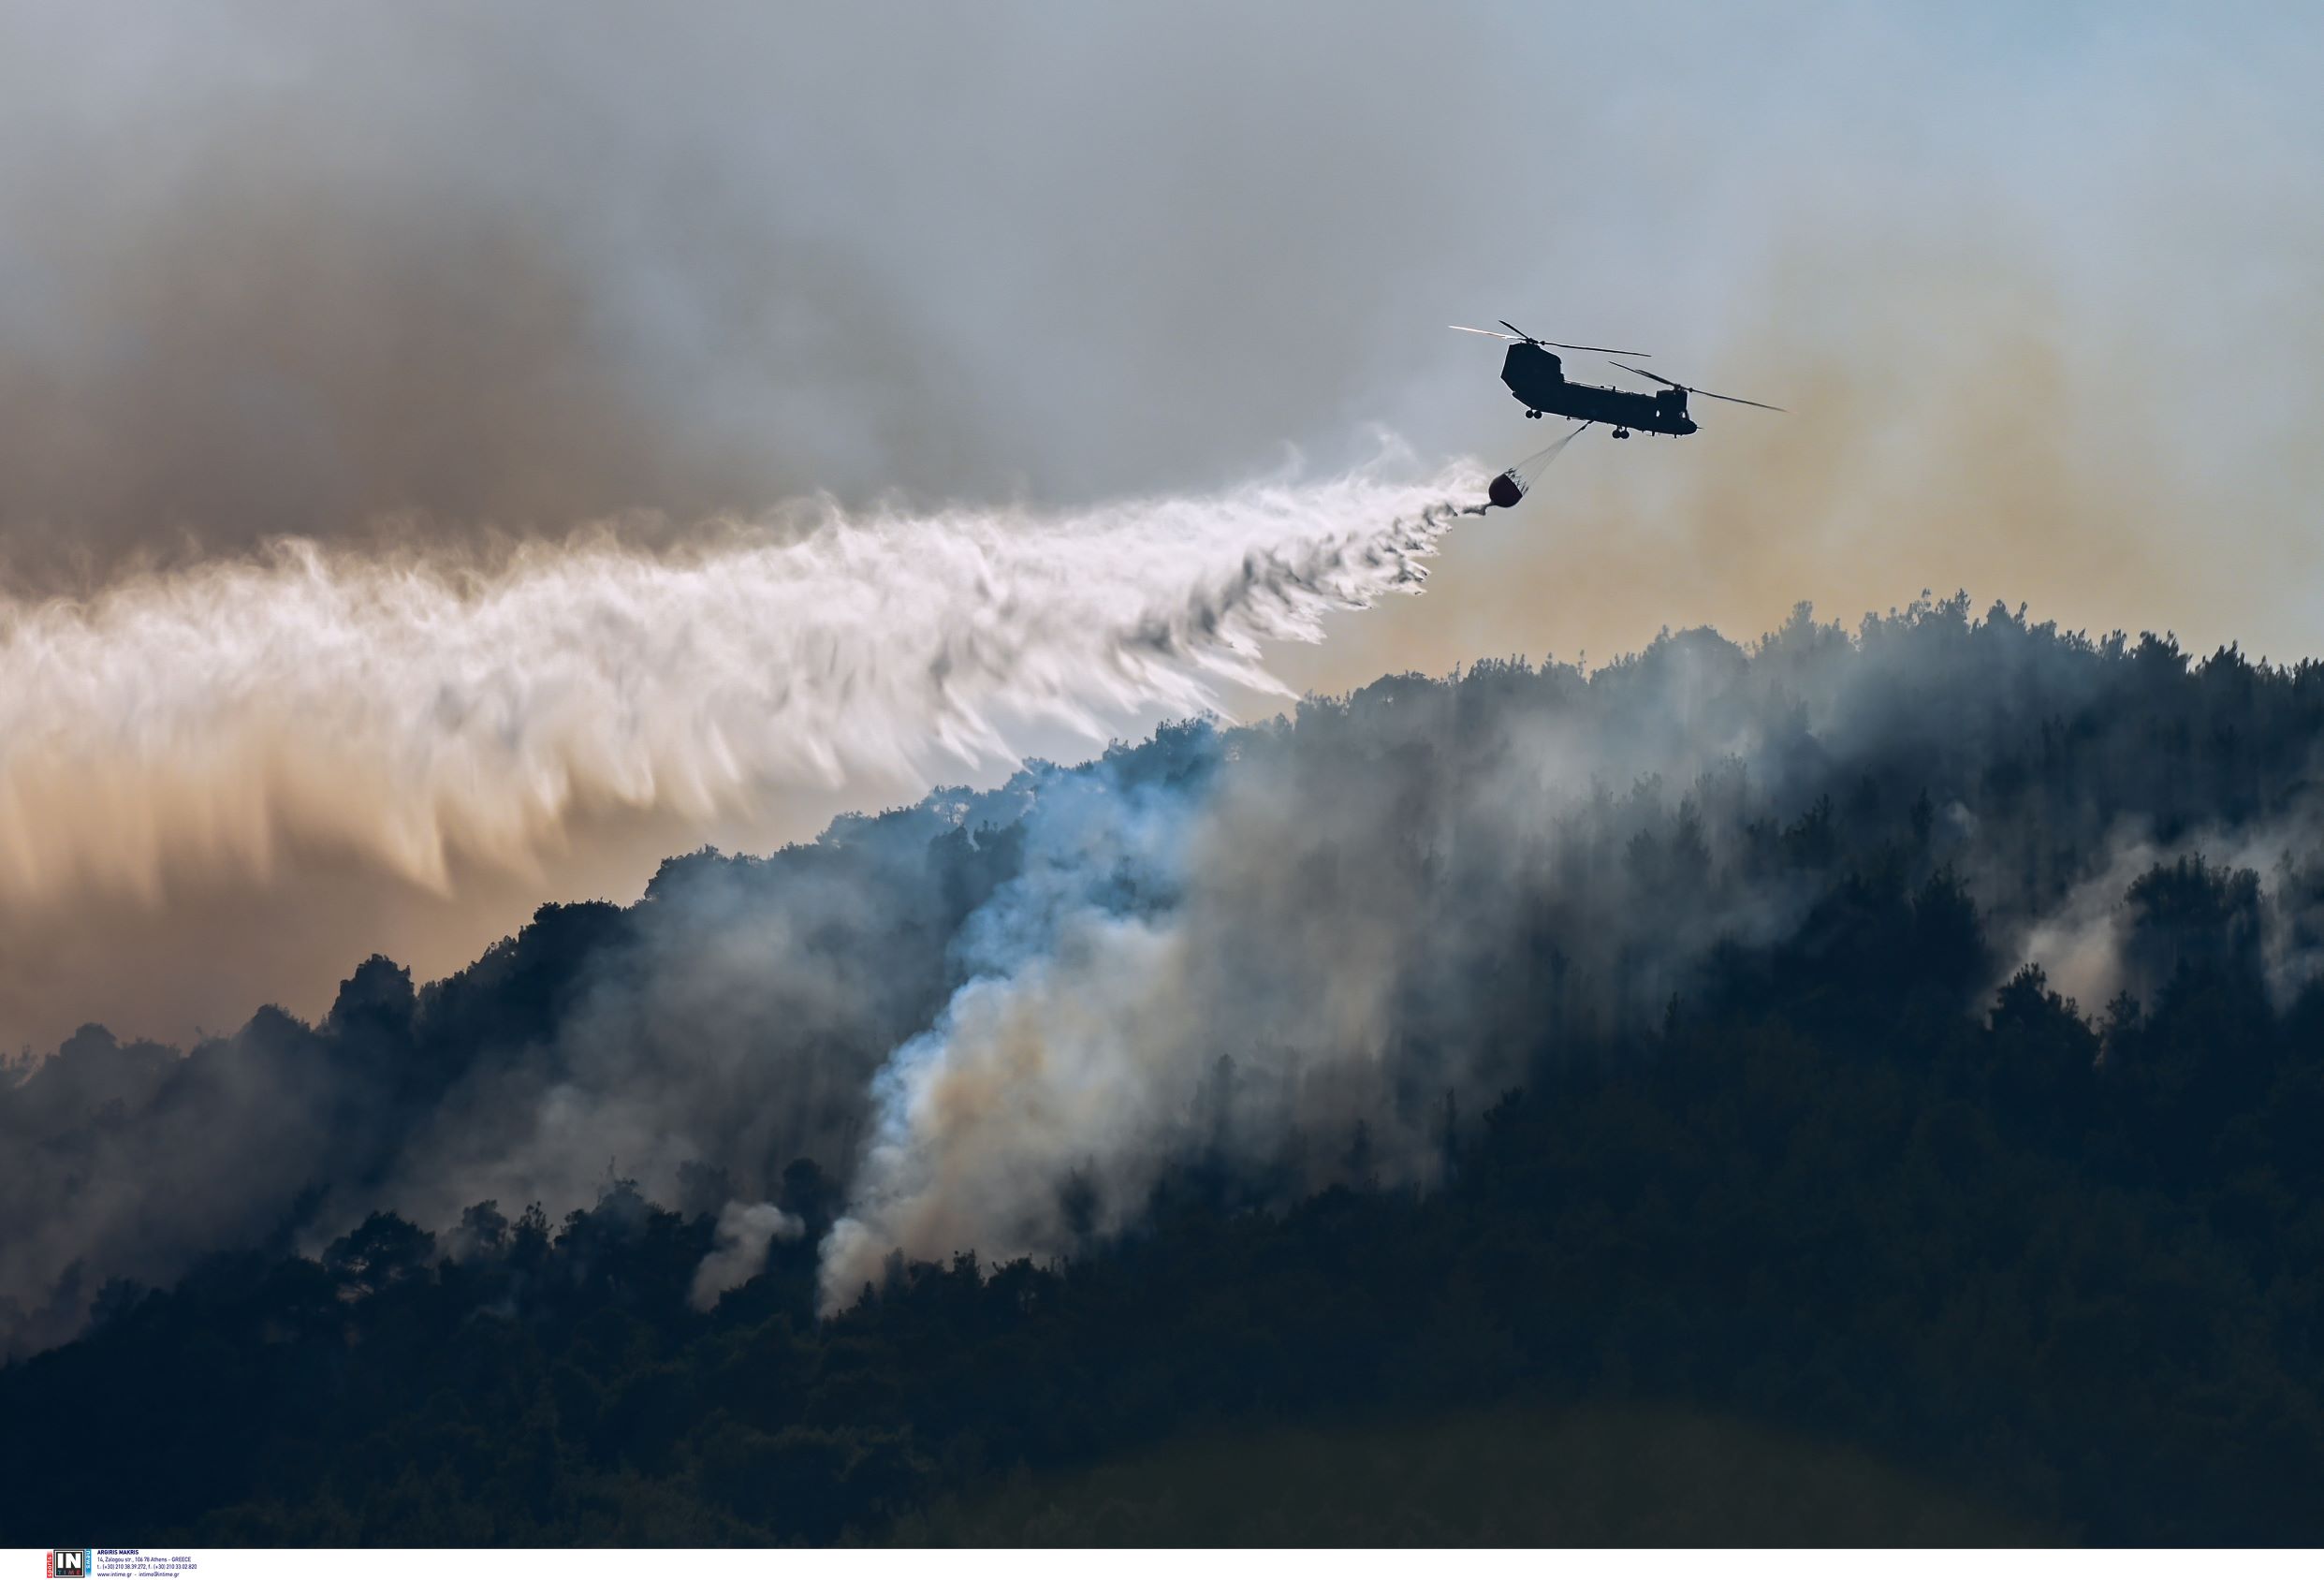 Ηλεία και Έβρος στο στόχαστρο εμπρηστών – Τι δείχνουν οι έρευνες της Πυροσβεστικής για τις καταστροφικές πυρκαγιές στους δύο νομούς